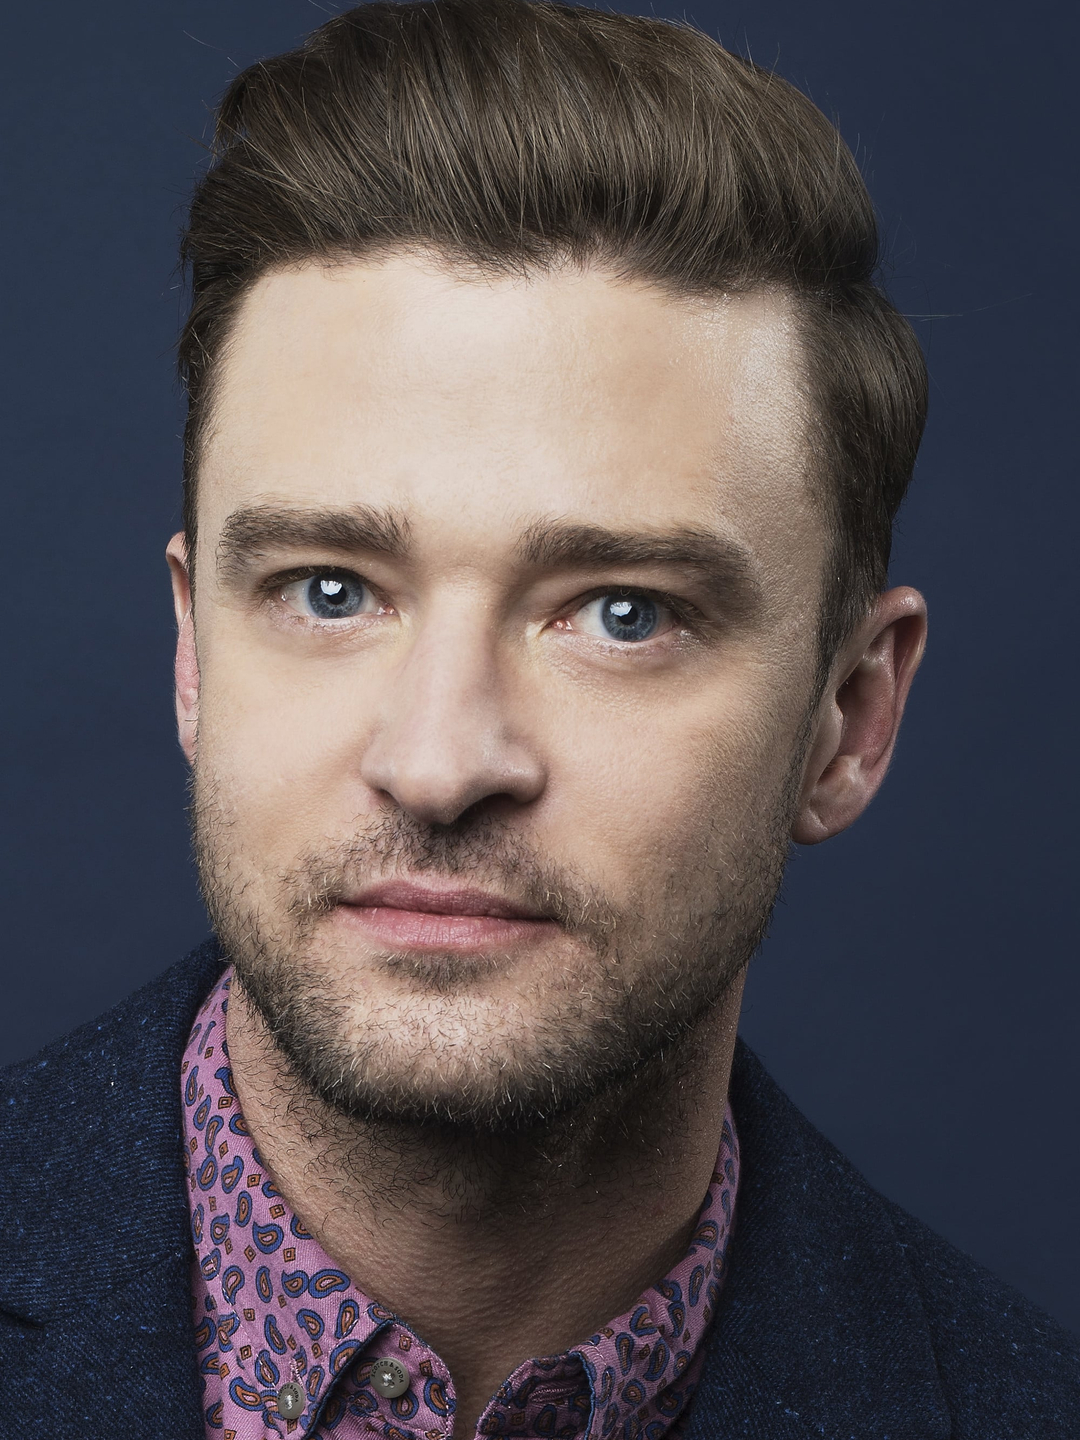 Justin Timberlake young photos